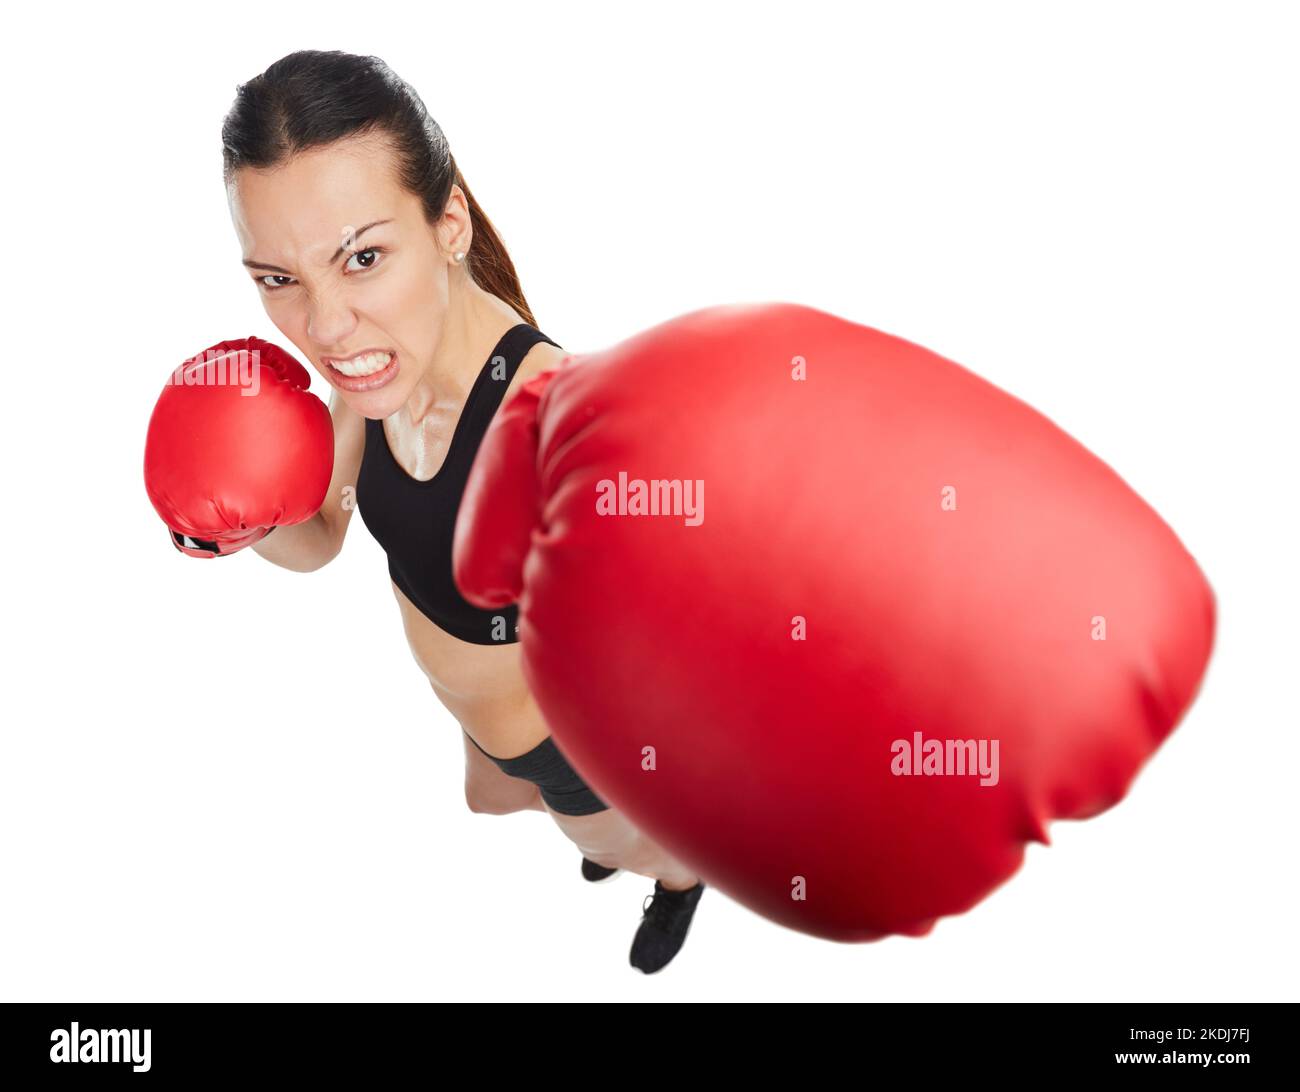 Vous devez tout donner. Portrait en grand angle d'une jeune athlète de boxe féminine sur fond blanc. Banque D'Images